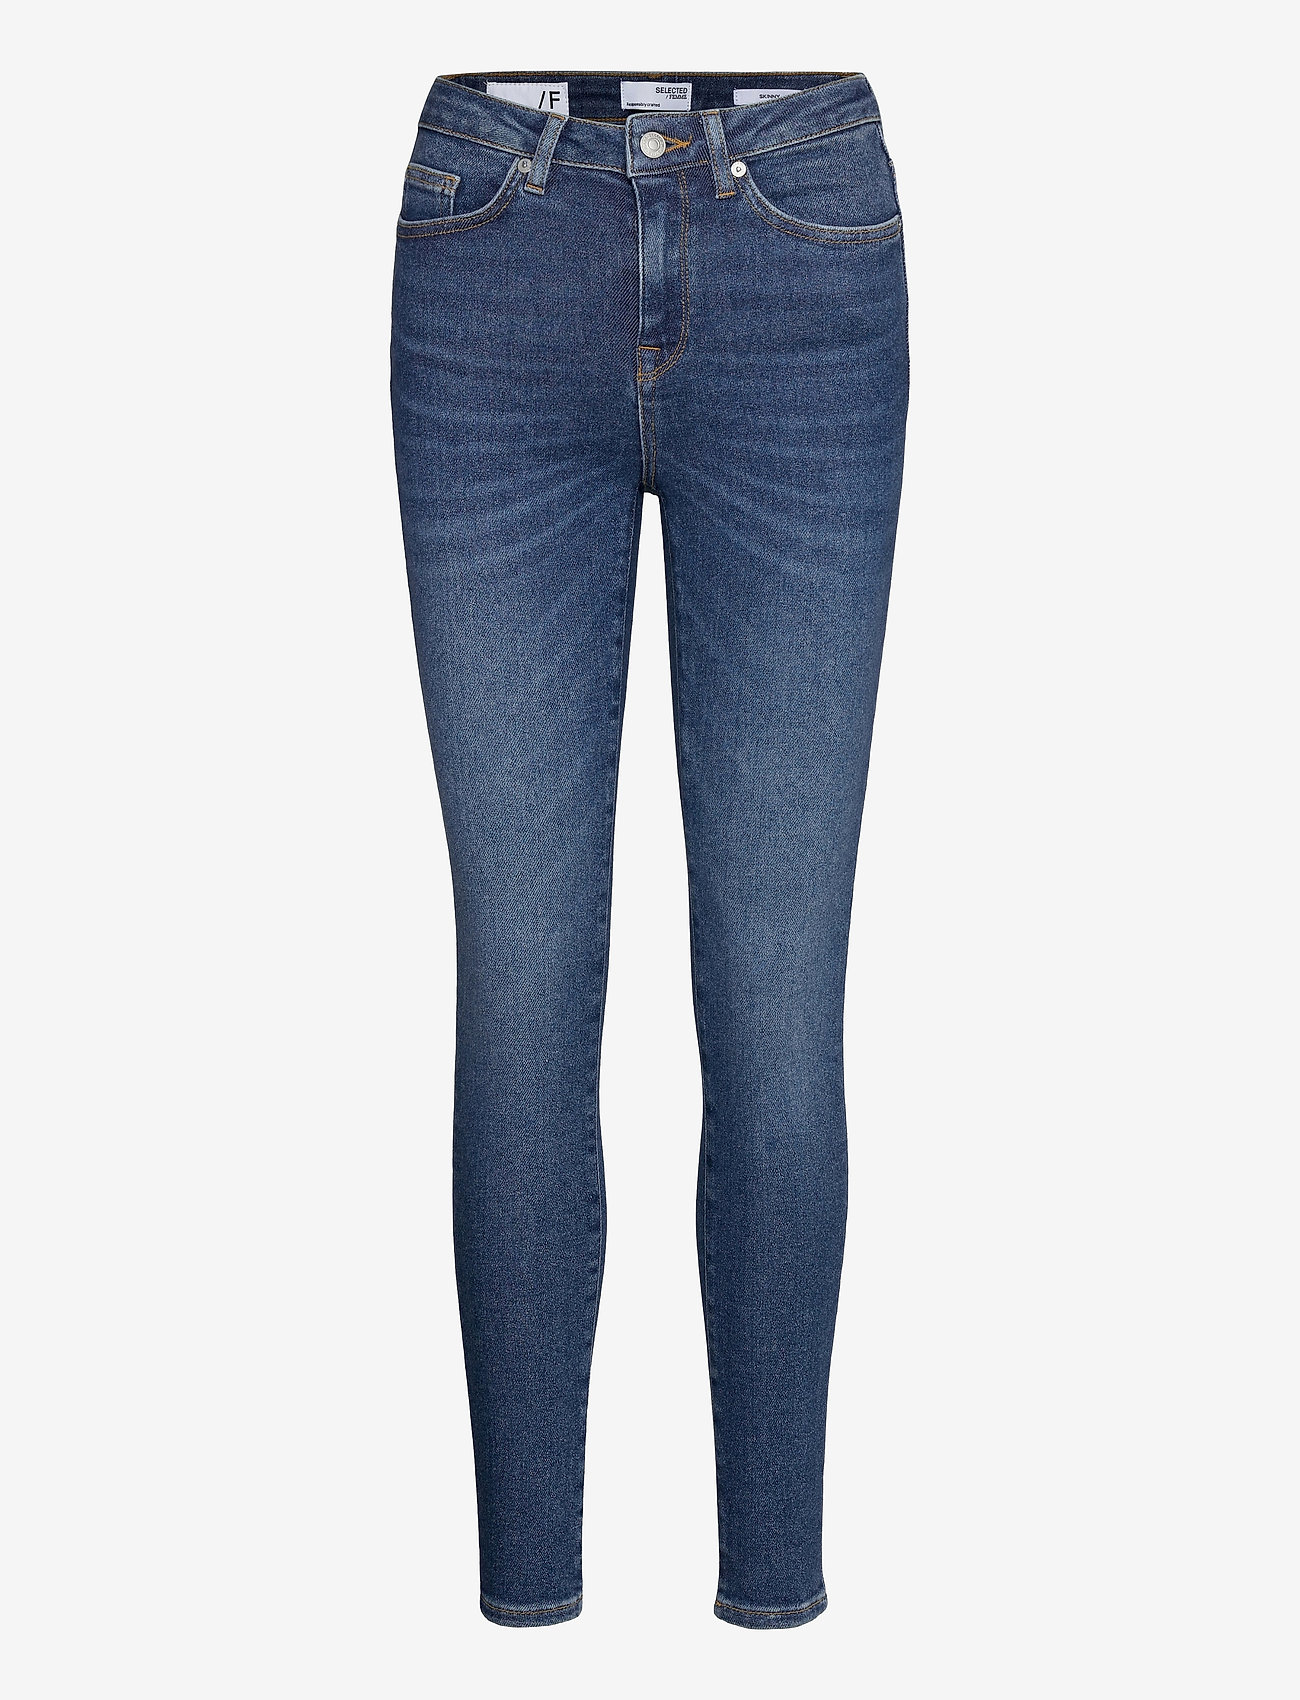 Selected Femme - SLFSOPHIA MW SKINNY DARK BLU JEAN U NOOS - skinny jeans - dark blue denim - 0